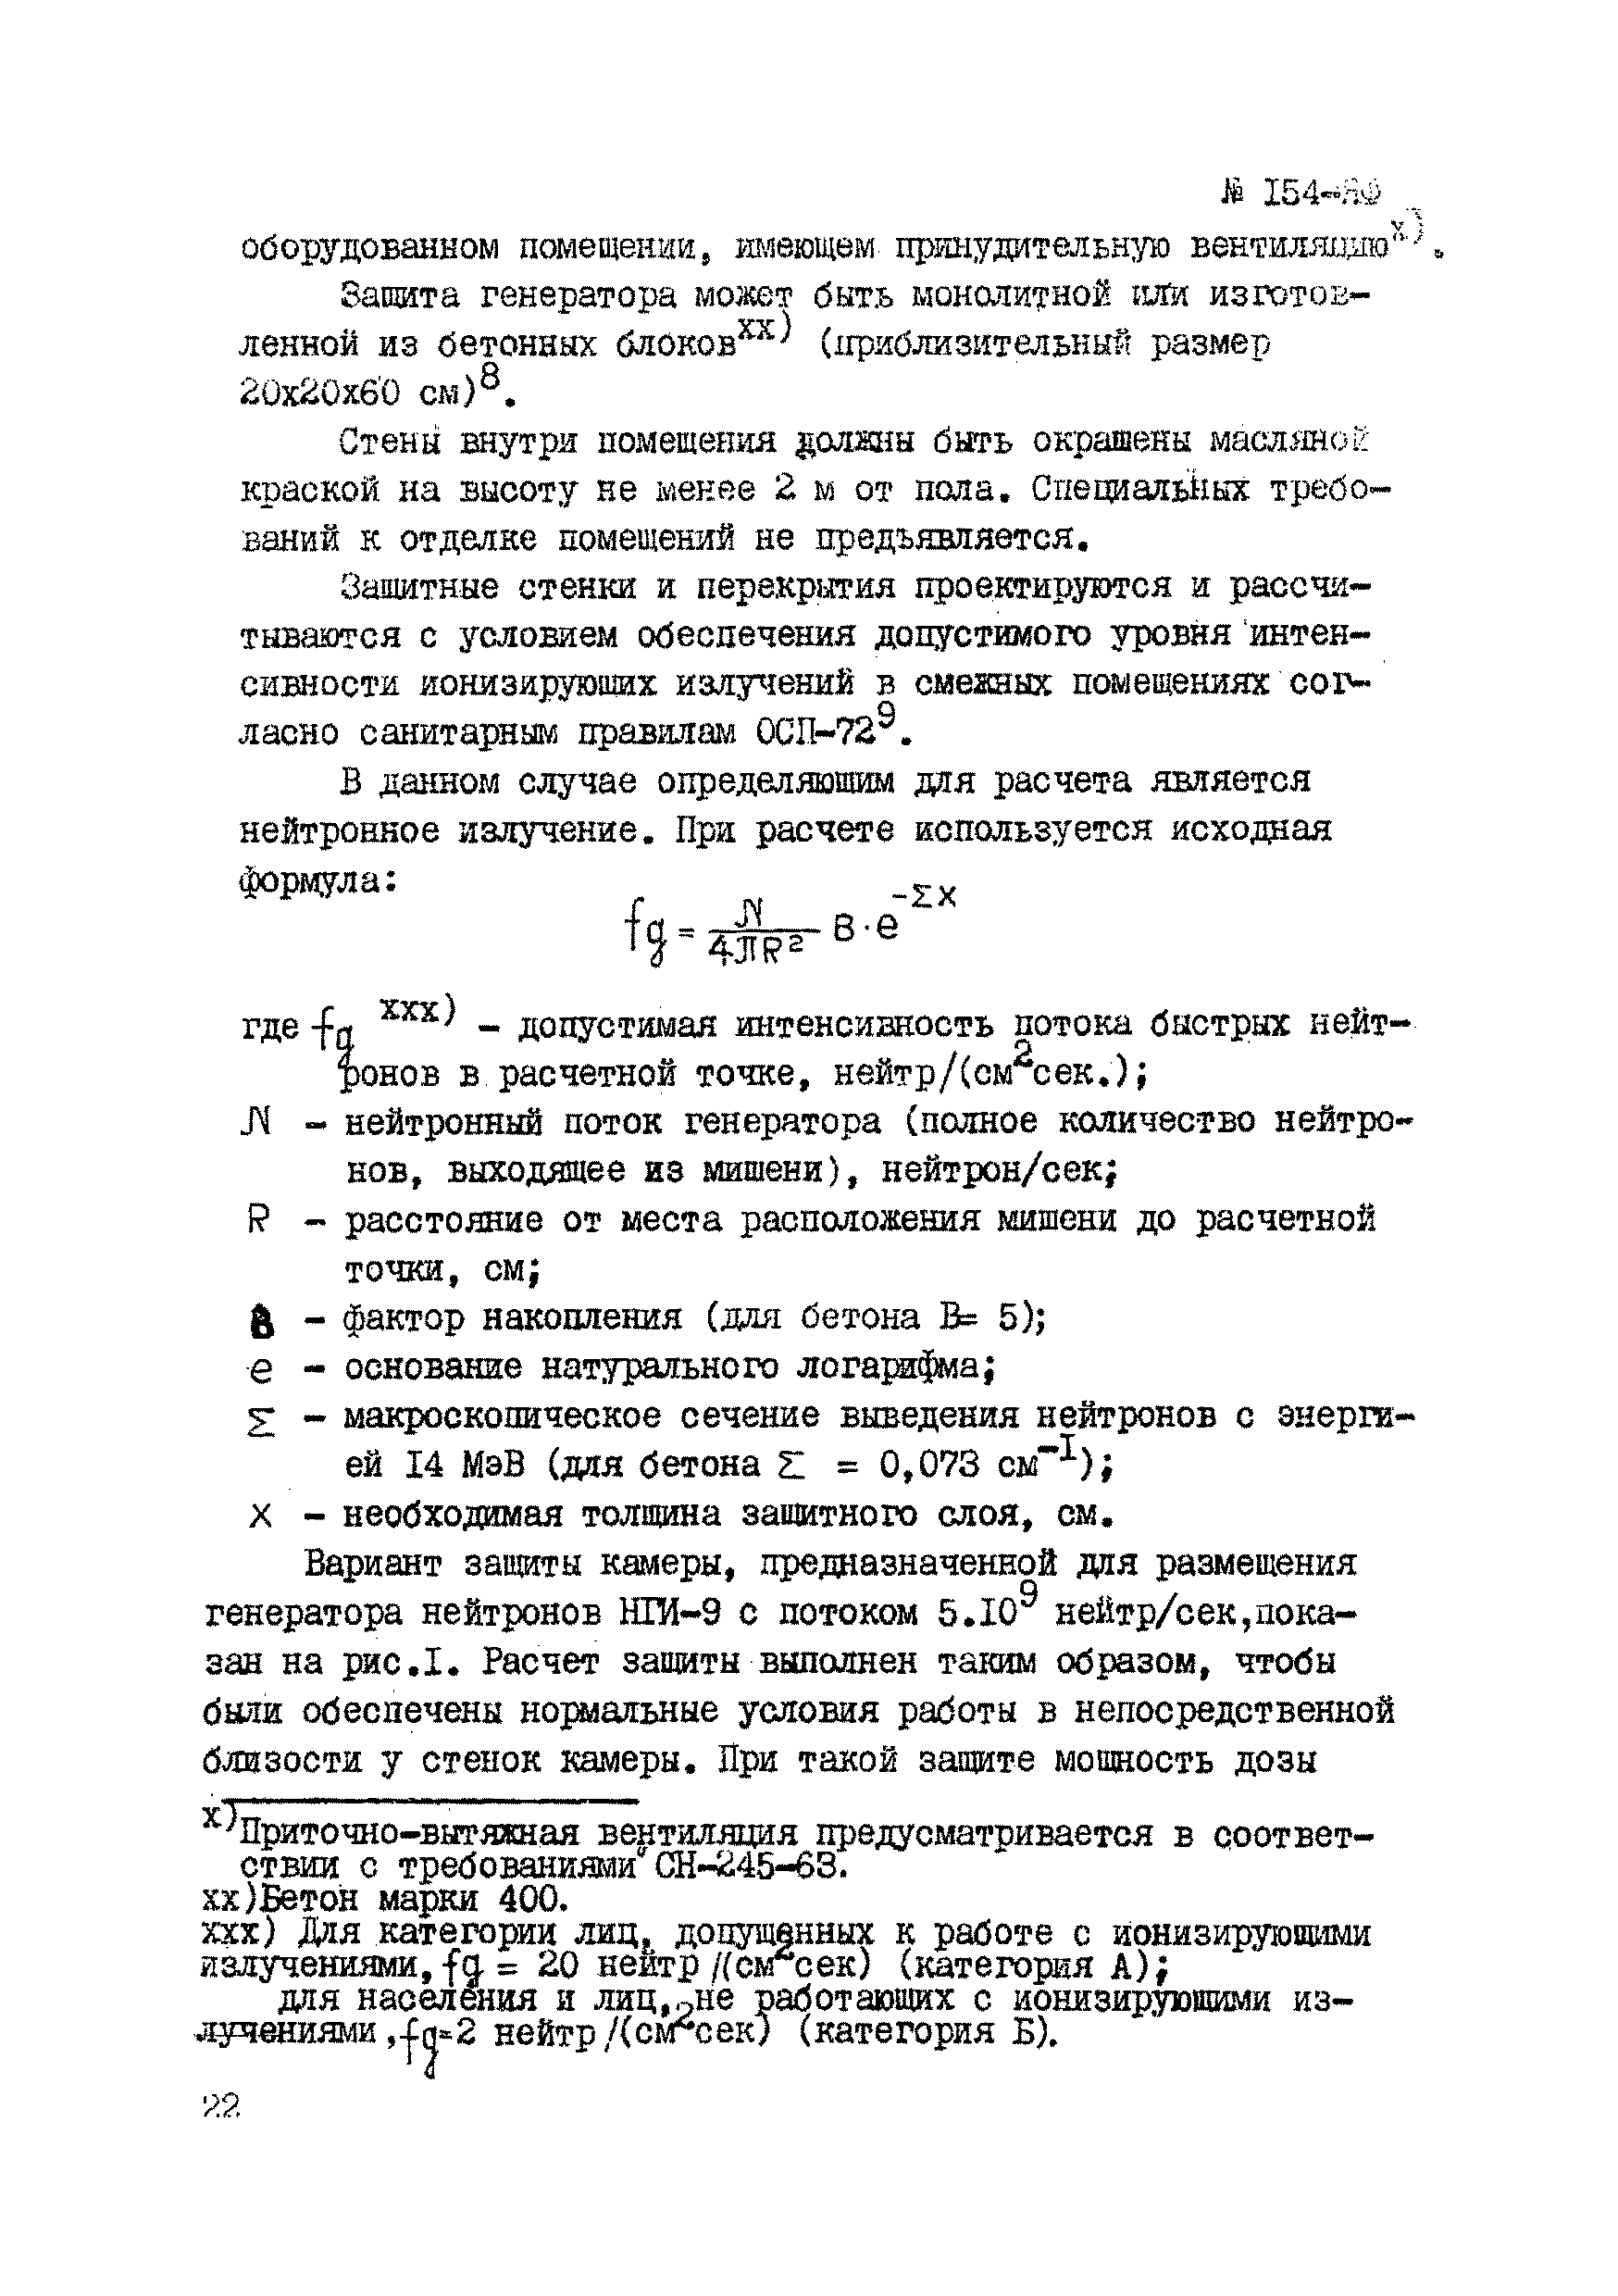 Инструкция НСАМ 154-ЯФ